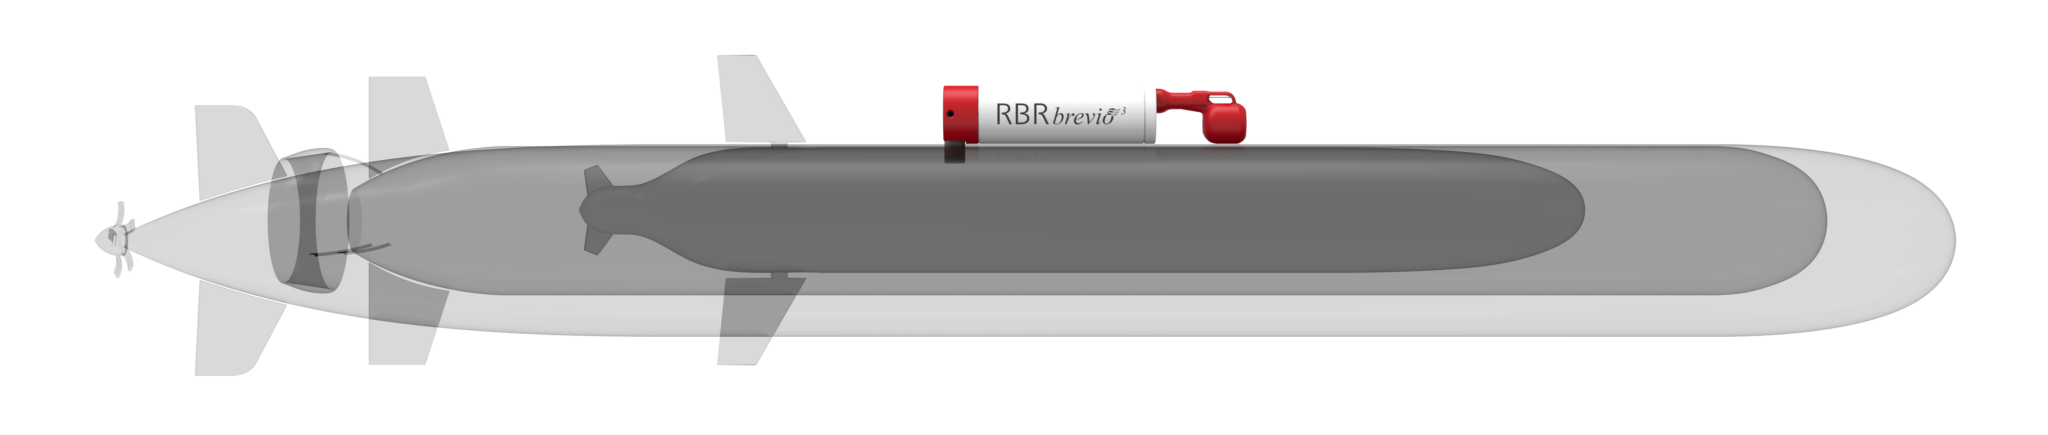 RBRbrevio³ C.T.D on AUV/ROV